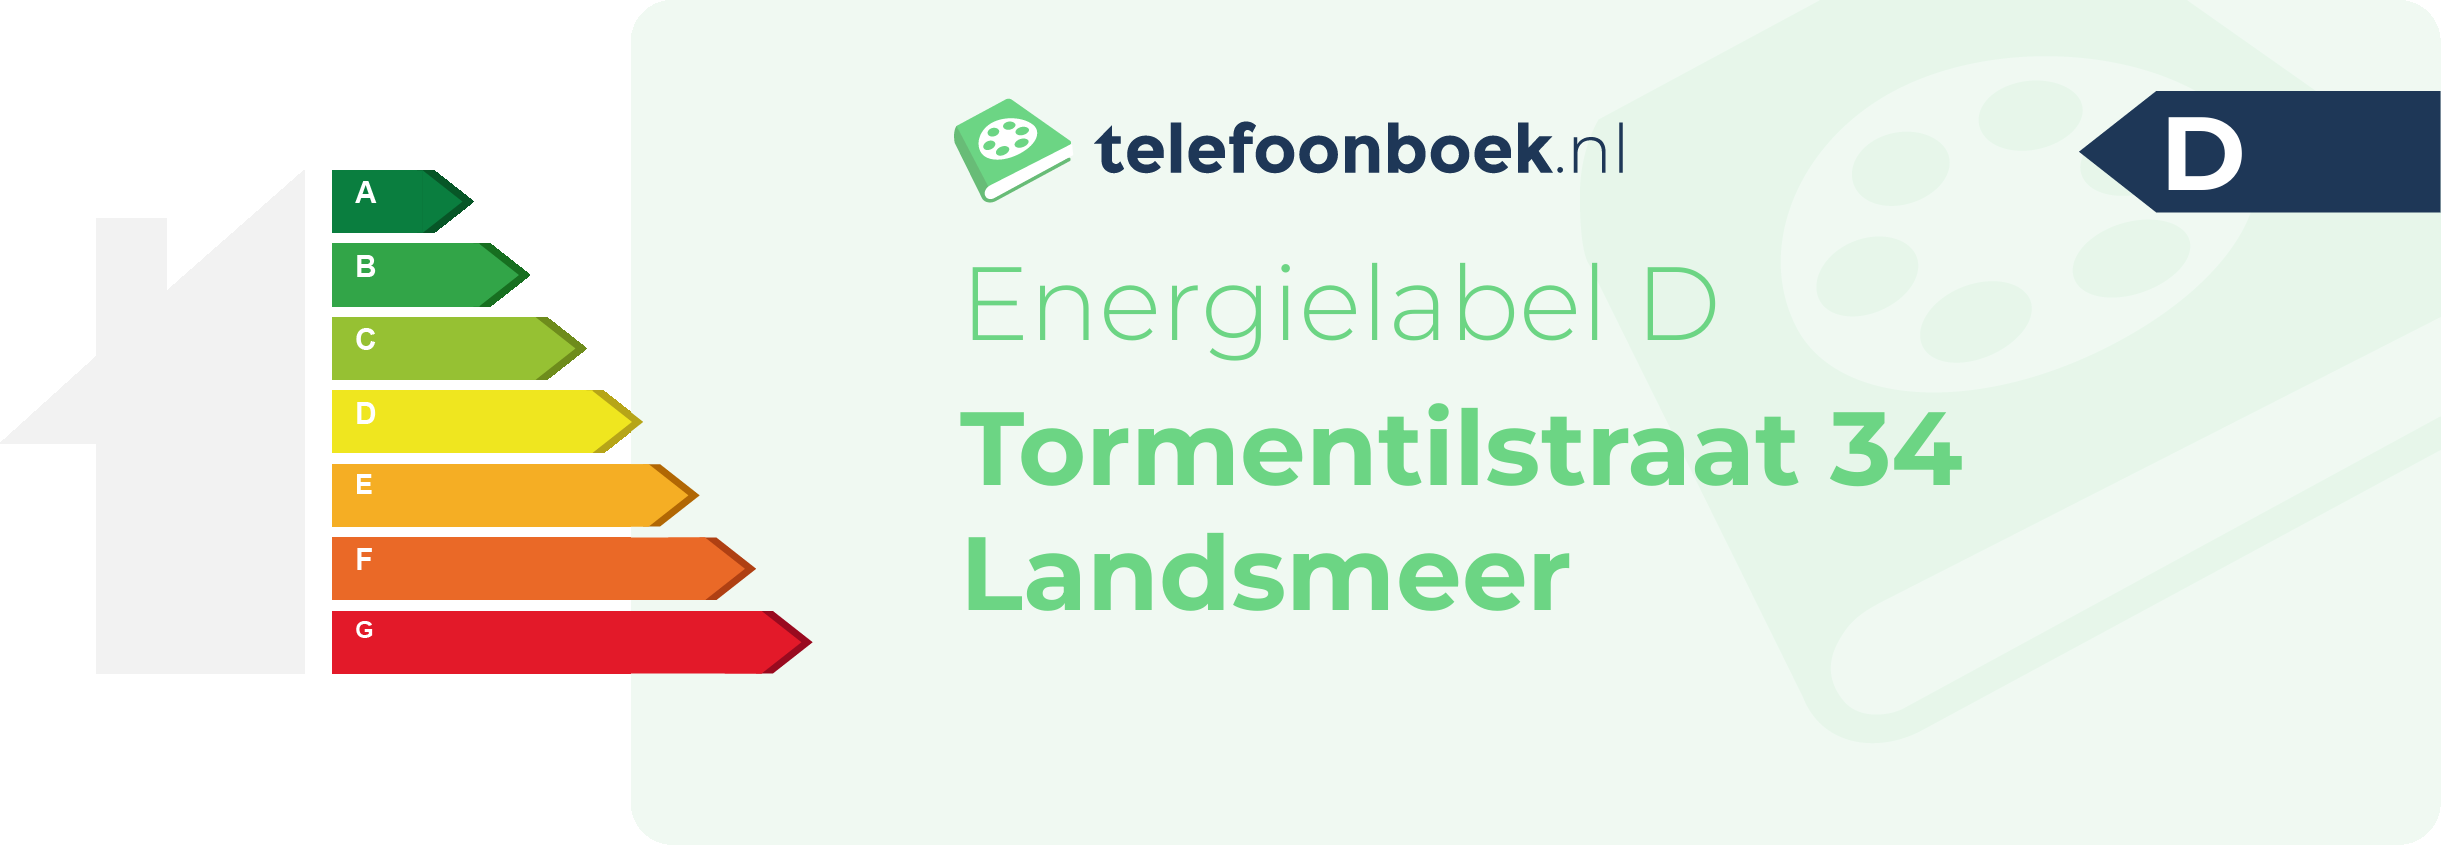 Energielabel Tormentilstraat 34 Landsmeer